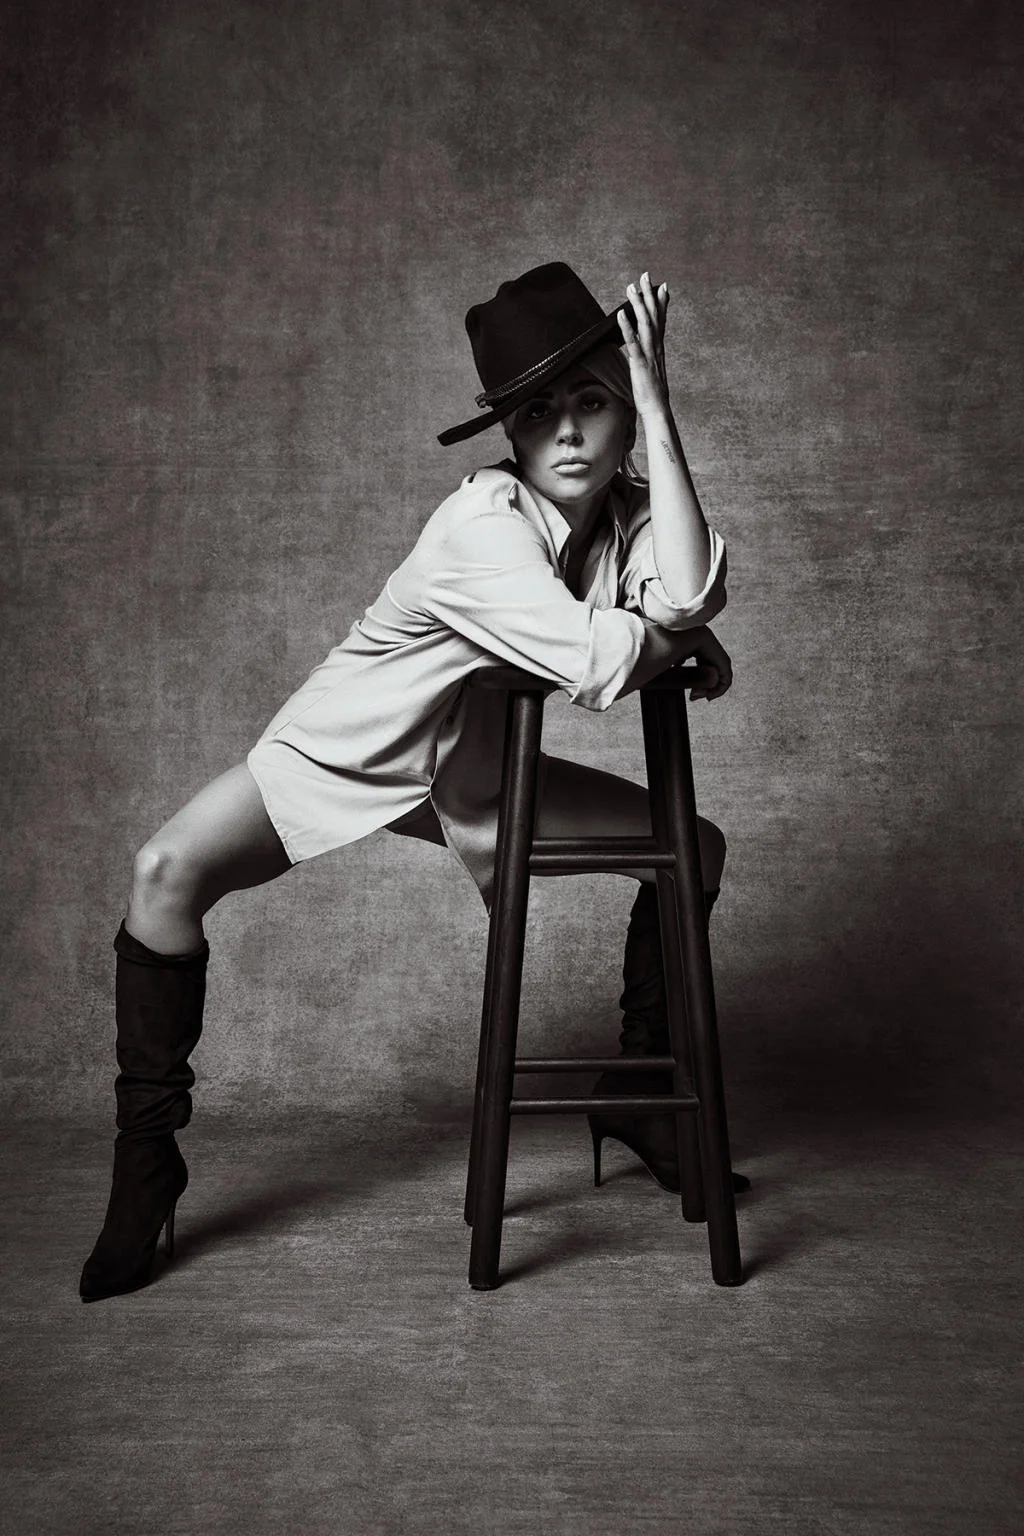 Леди Гага снялась в чувственной фотосессии, где засветила свои стройные ножки - фото 412600